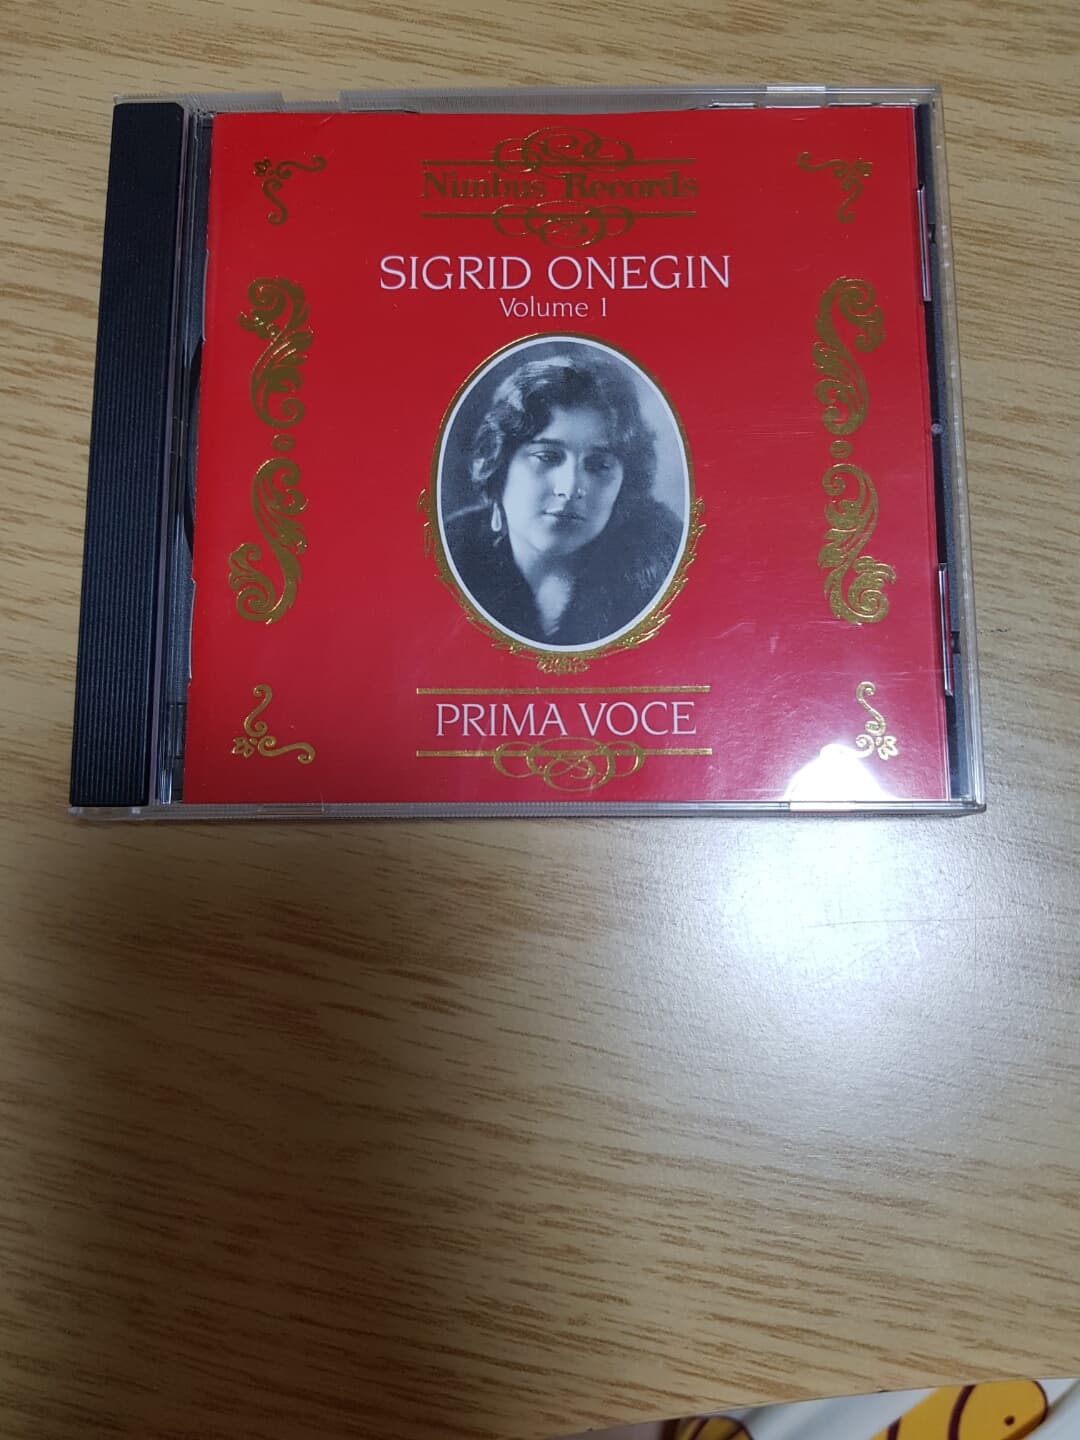 지그리트 오네긴 - 오페라 아리아와 가곡 1집 (Sigrid Onegin, Vol.1)(CD) - Sigrid Onegin